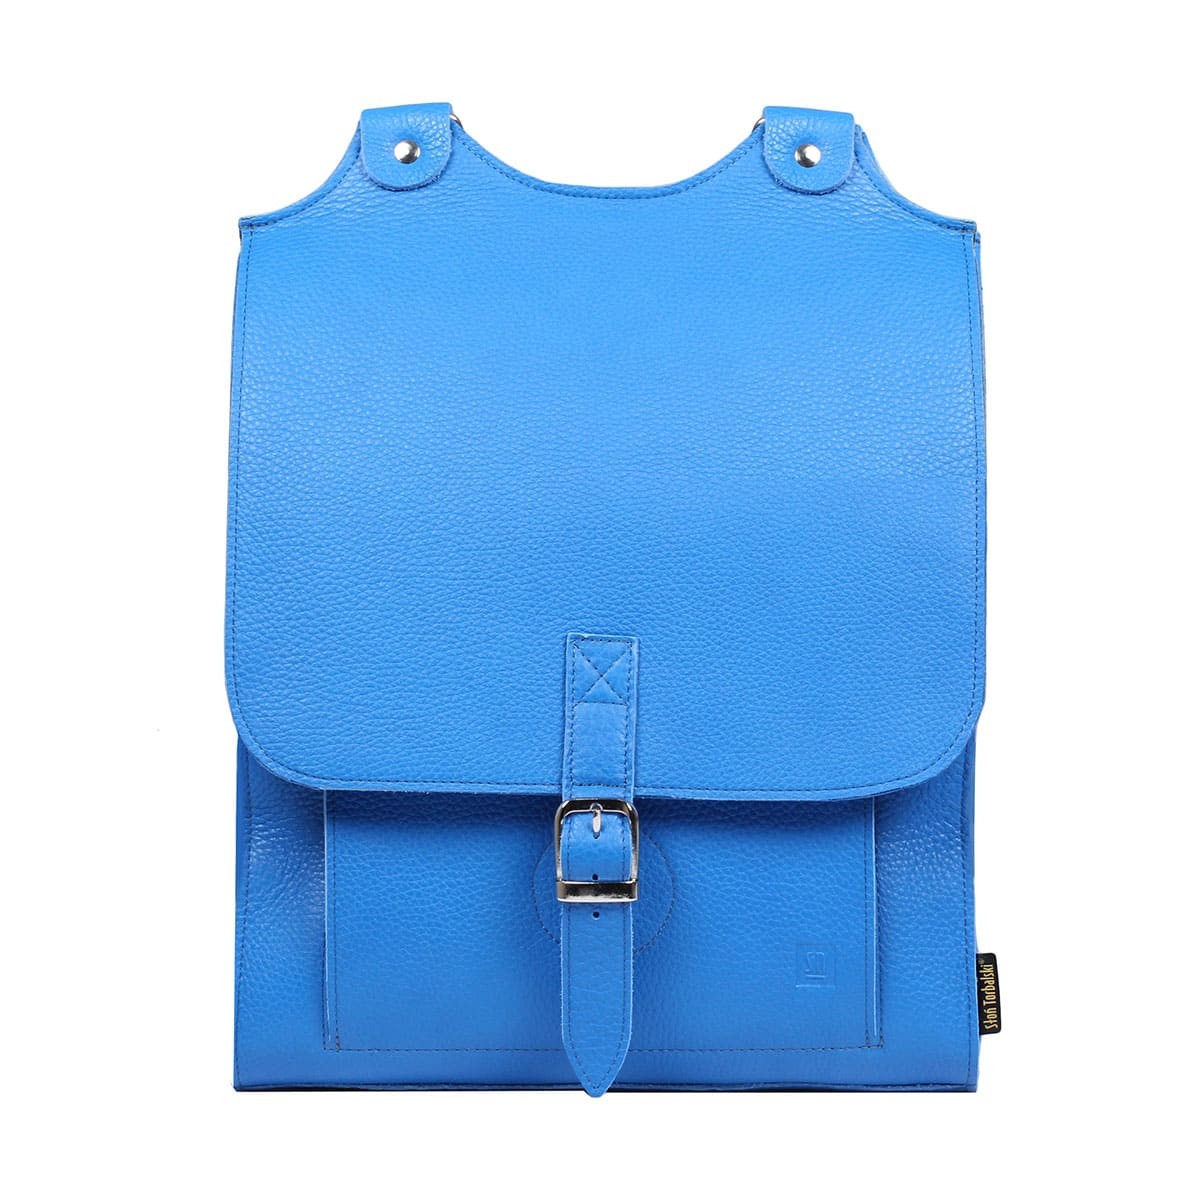 niebieski-plecak-skorzany-duzy-Karol-00-23-0808-E10-141609.jpg